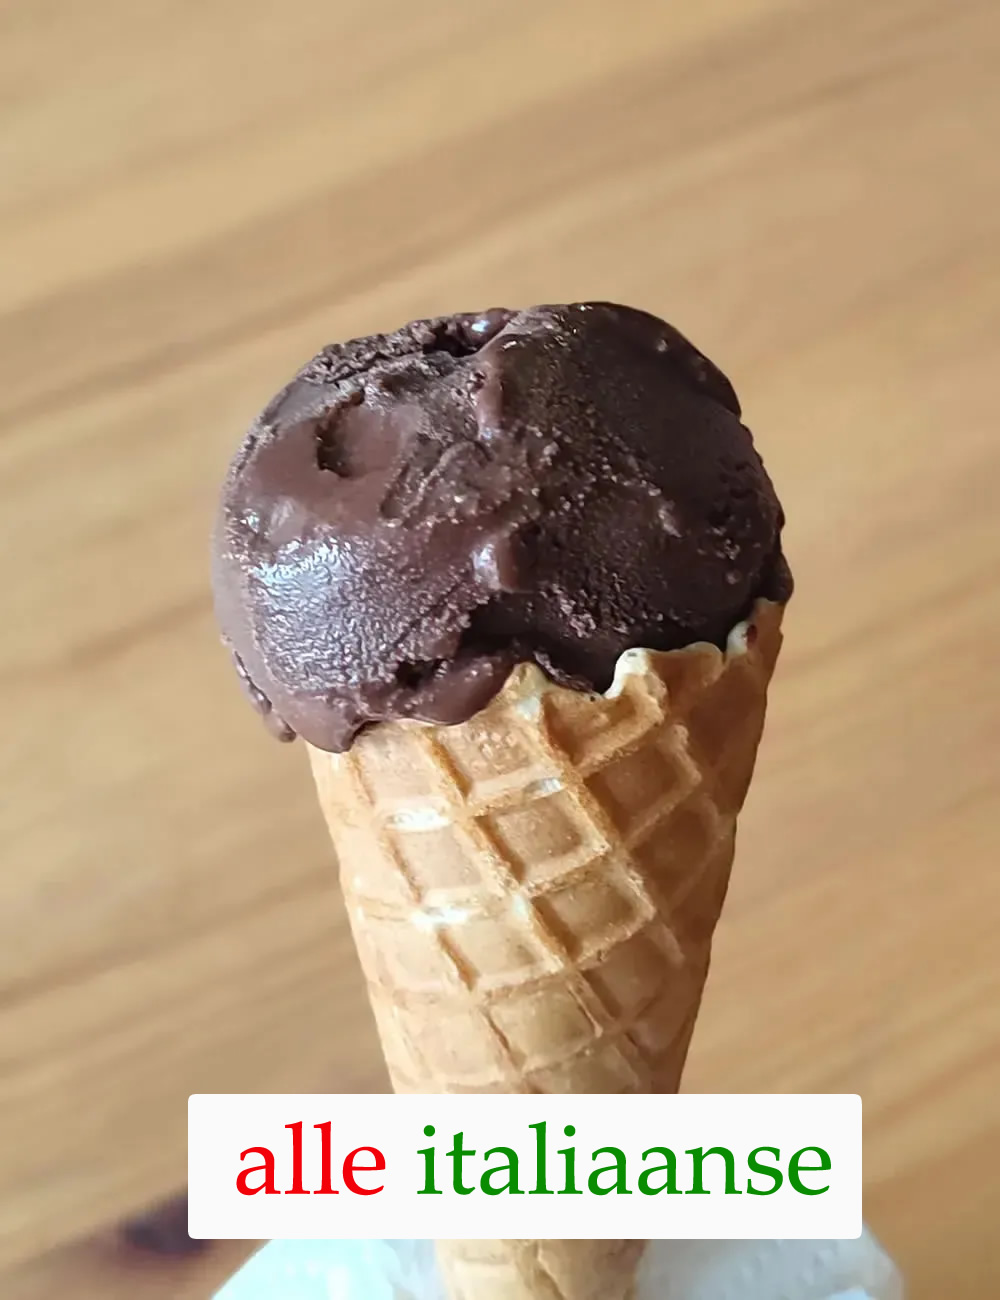 Chocolade ijs zelf maken - Alle Italiaanse